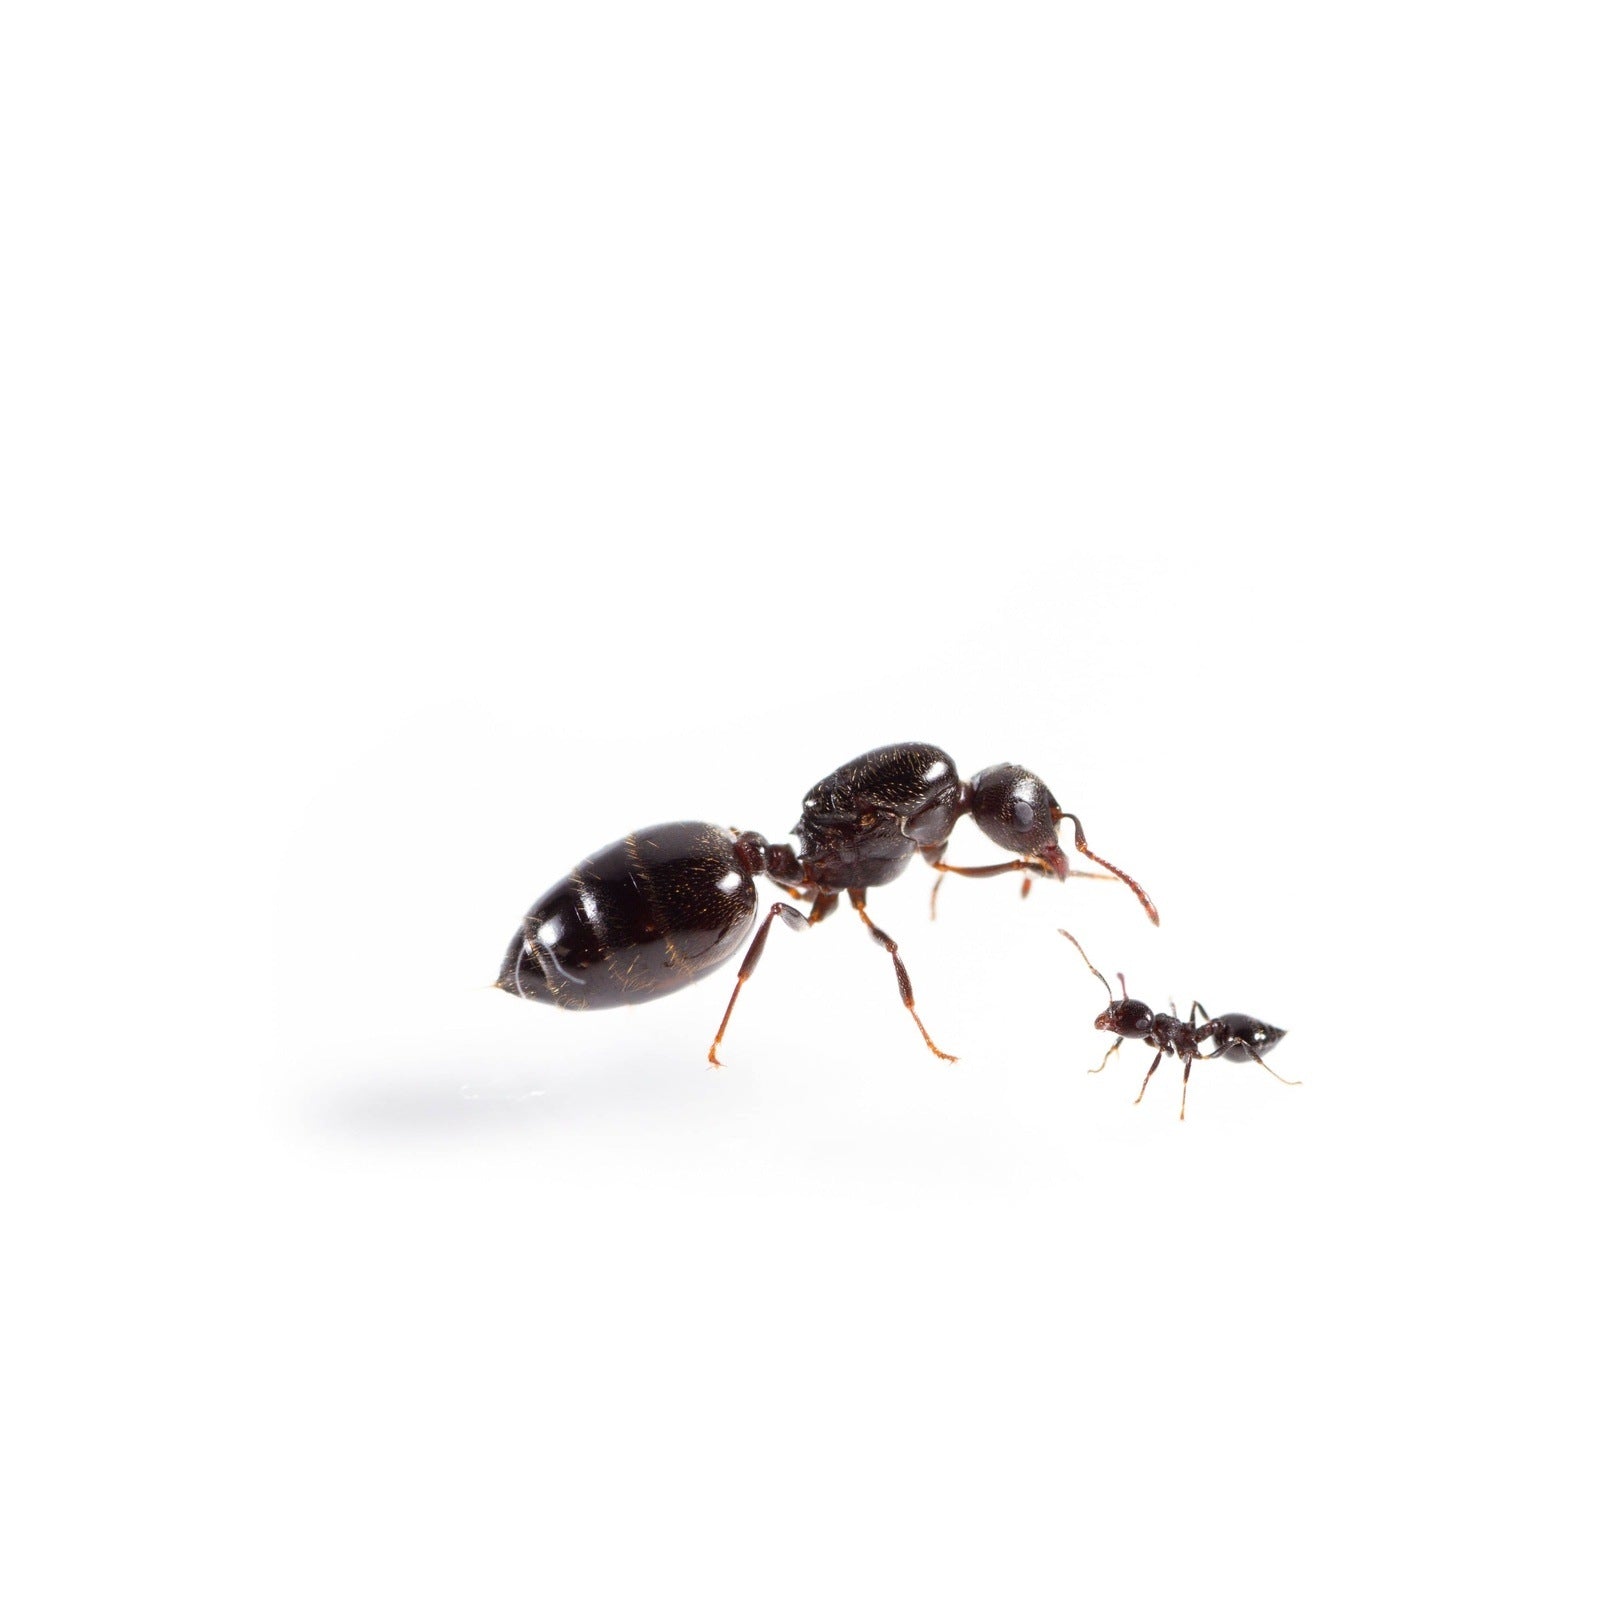 acrobat ants